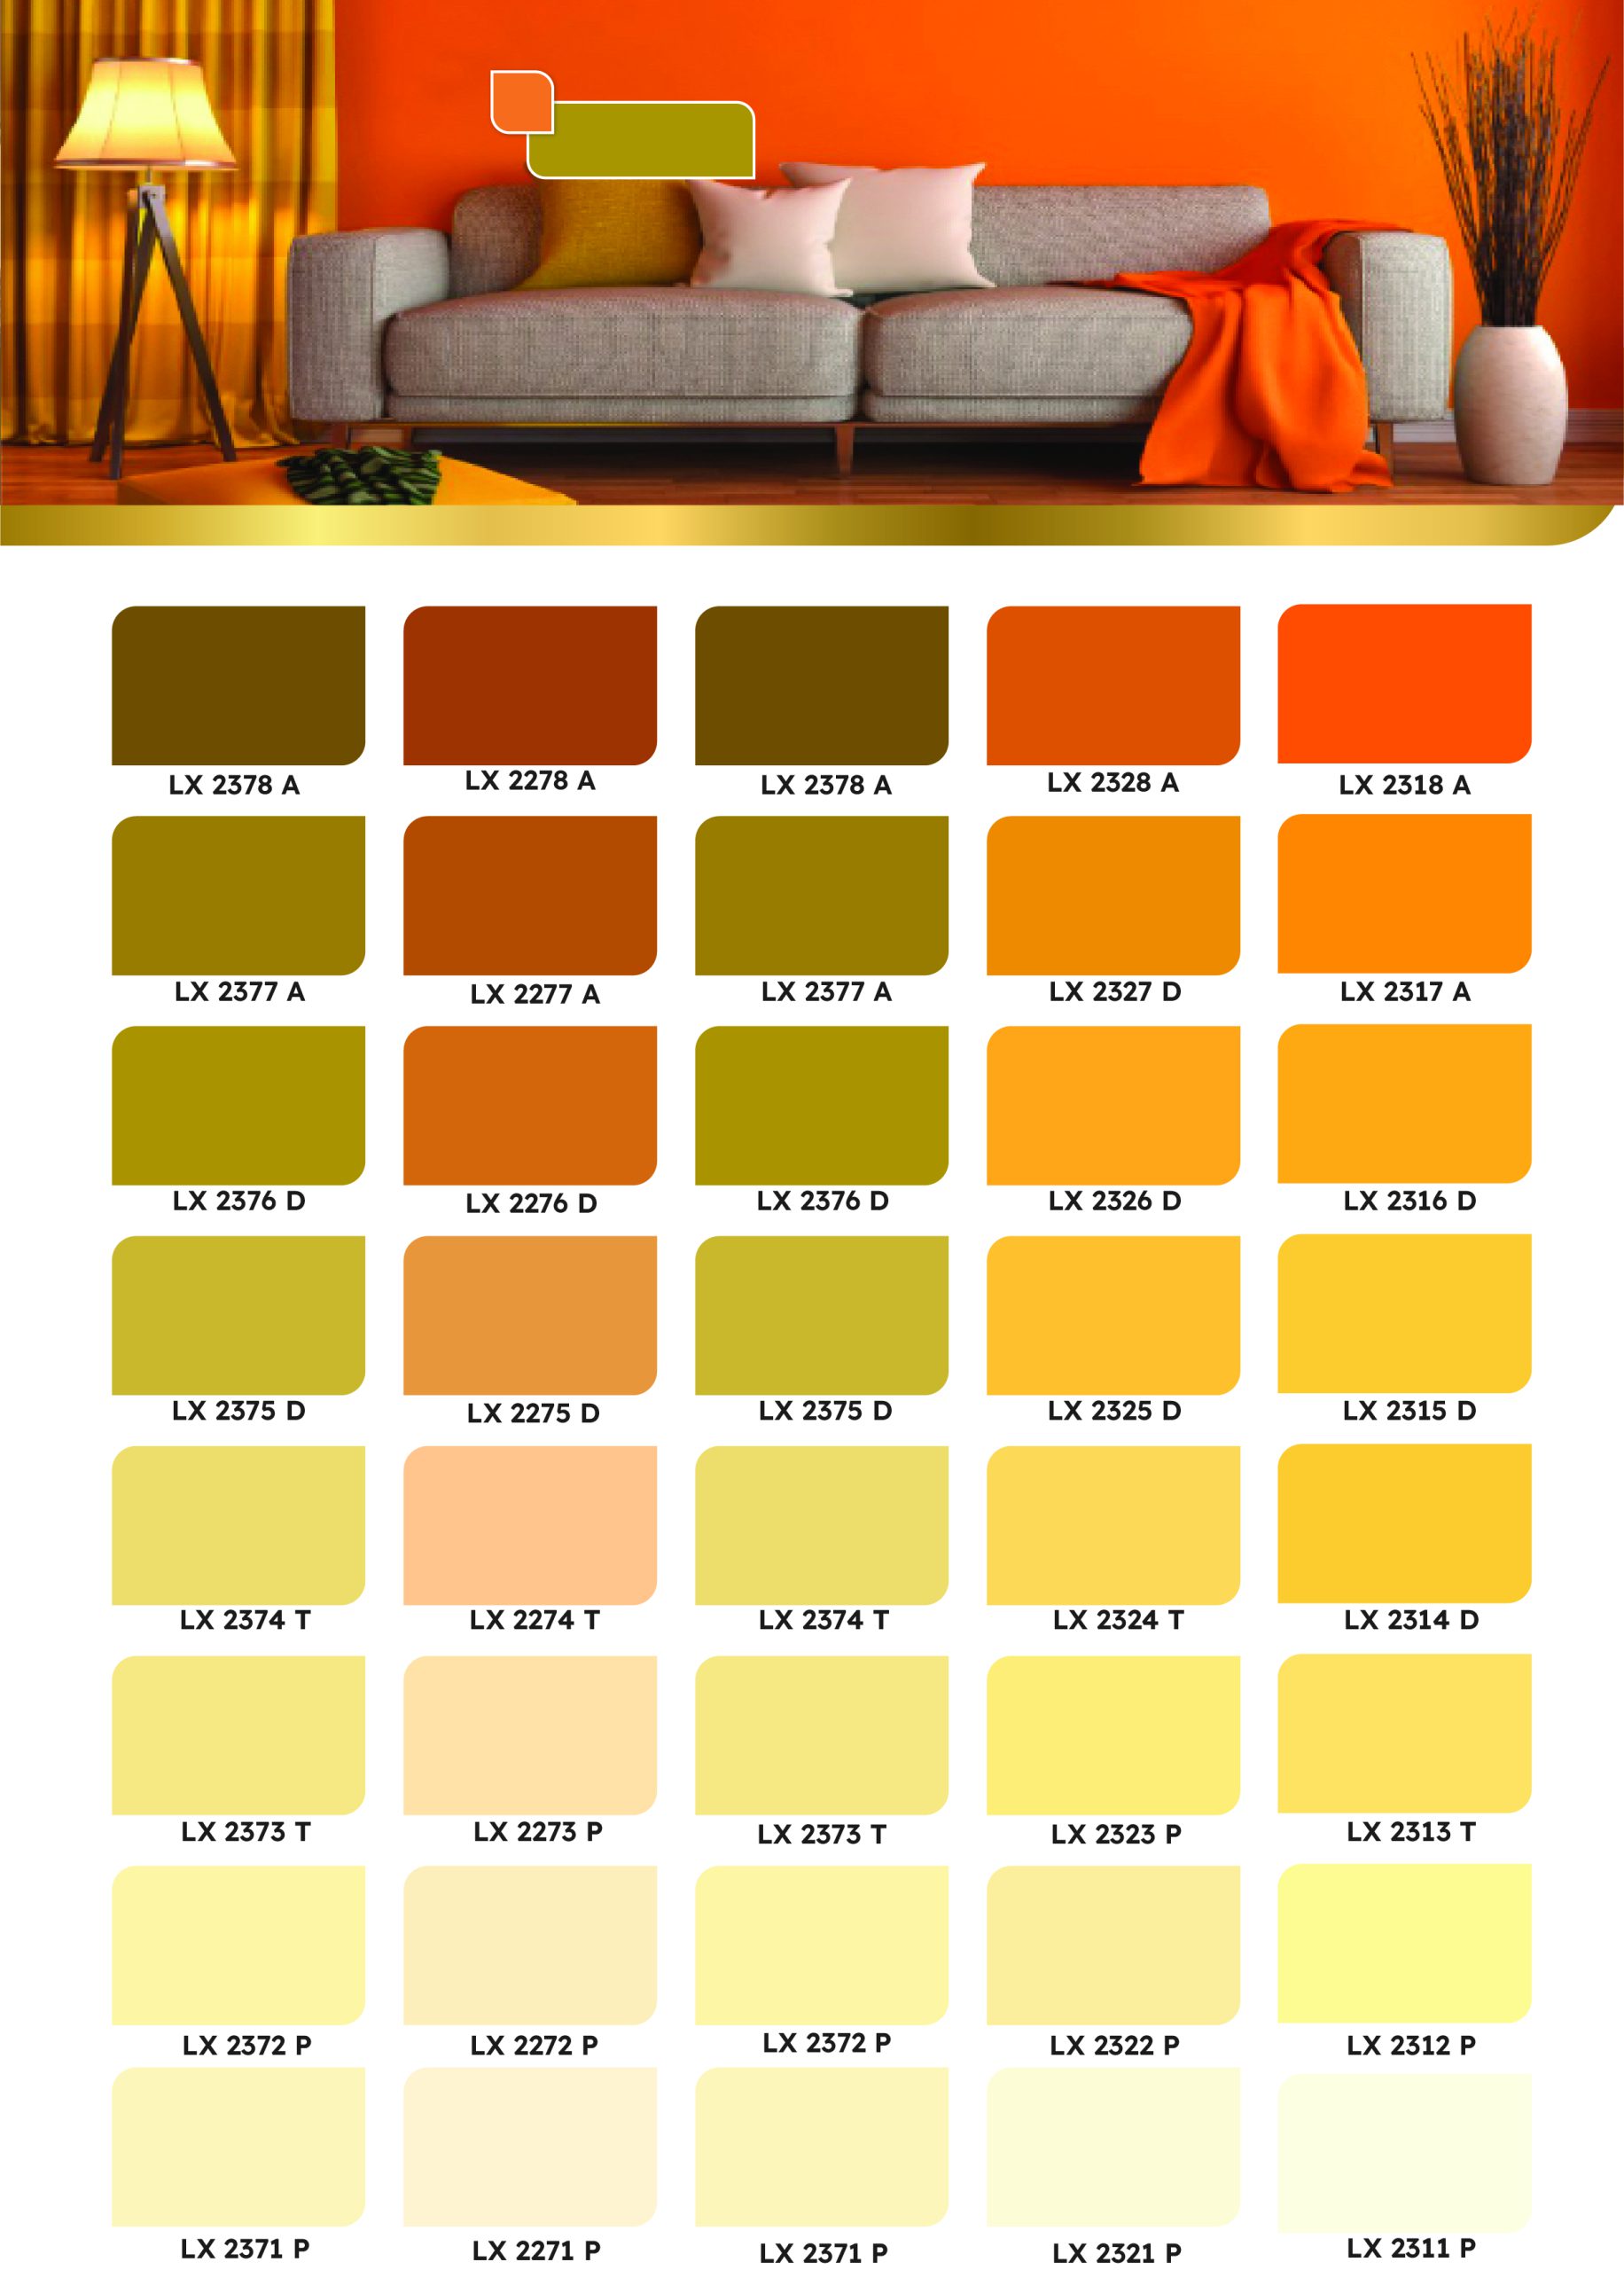 Bảng màu hệ thống sơn màu da cam Luxan